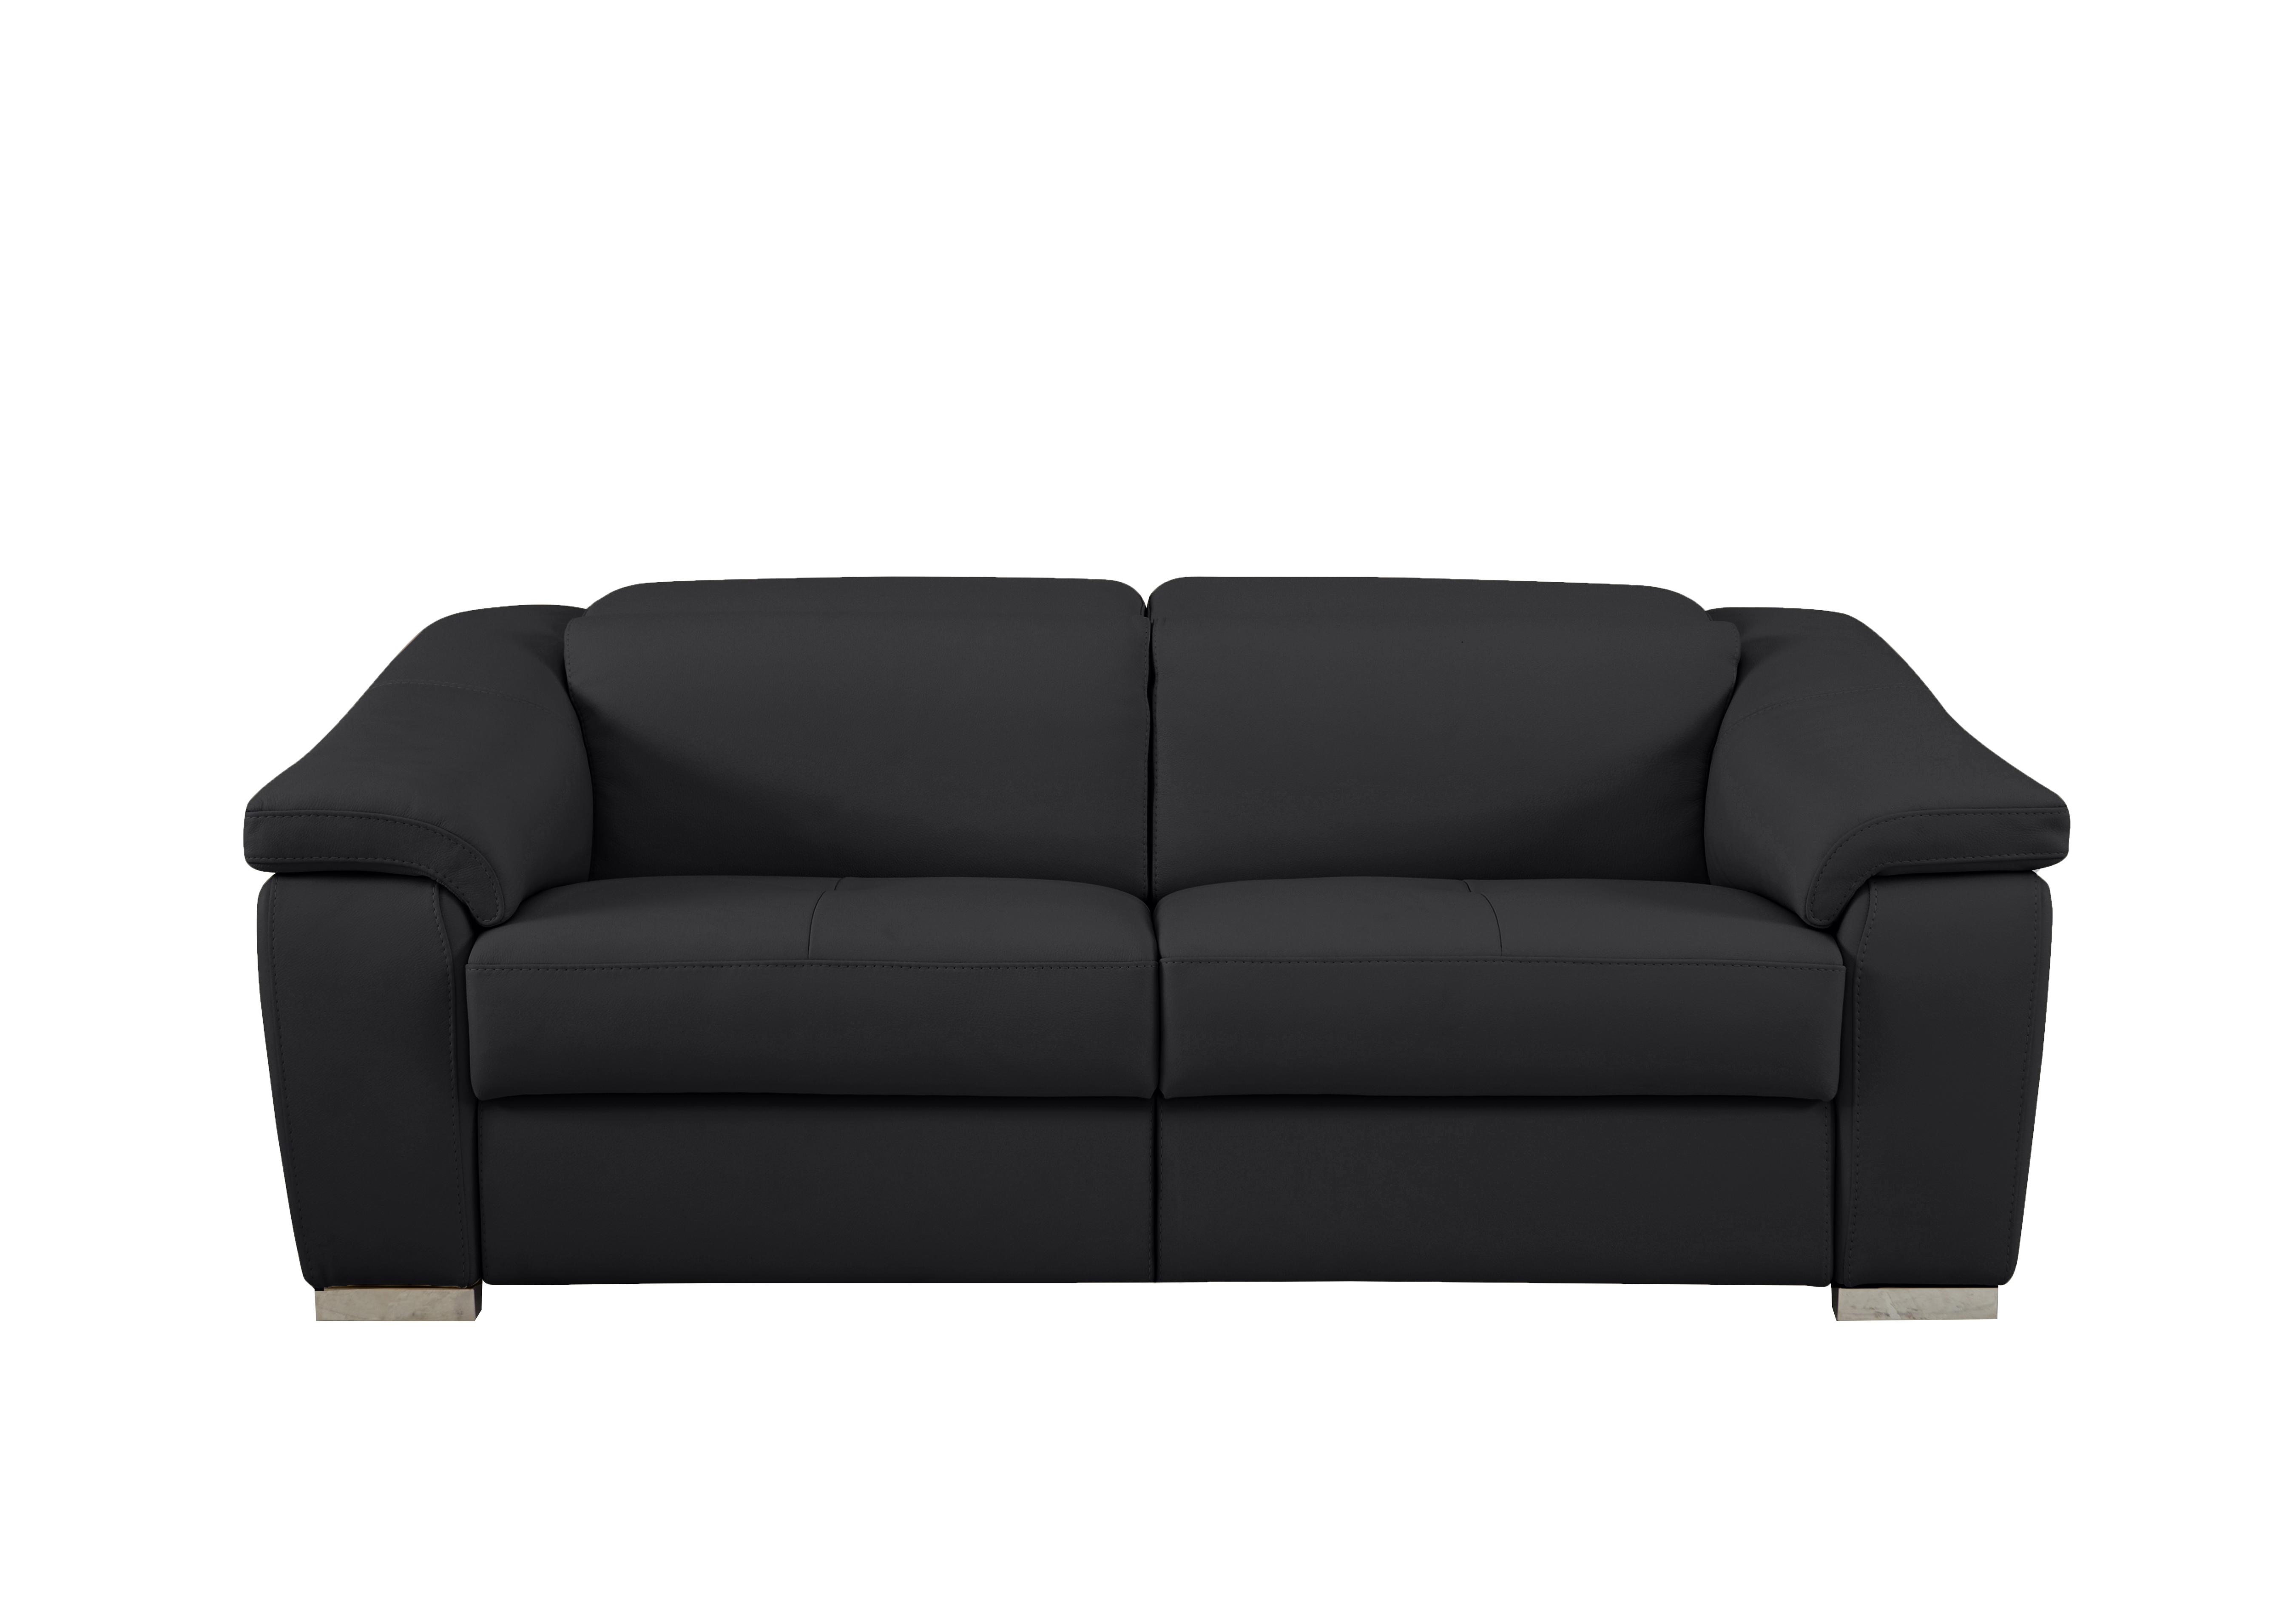 Galileo 3 Seater Leather Sofa in Torello Nero 71 Ch on Furniture Village